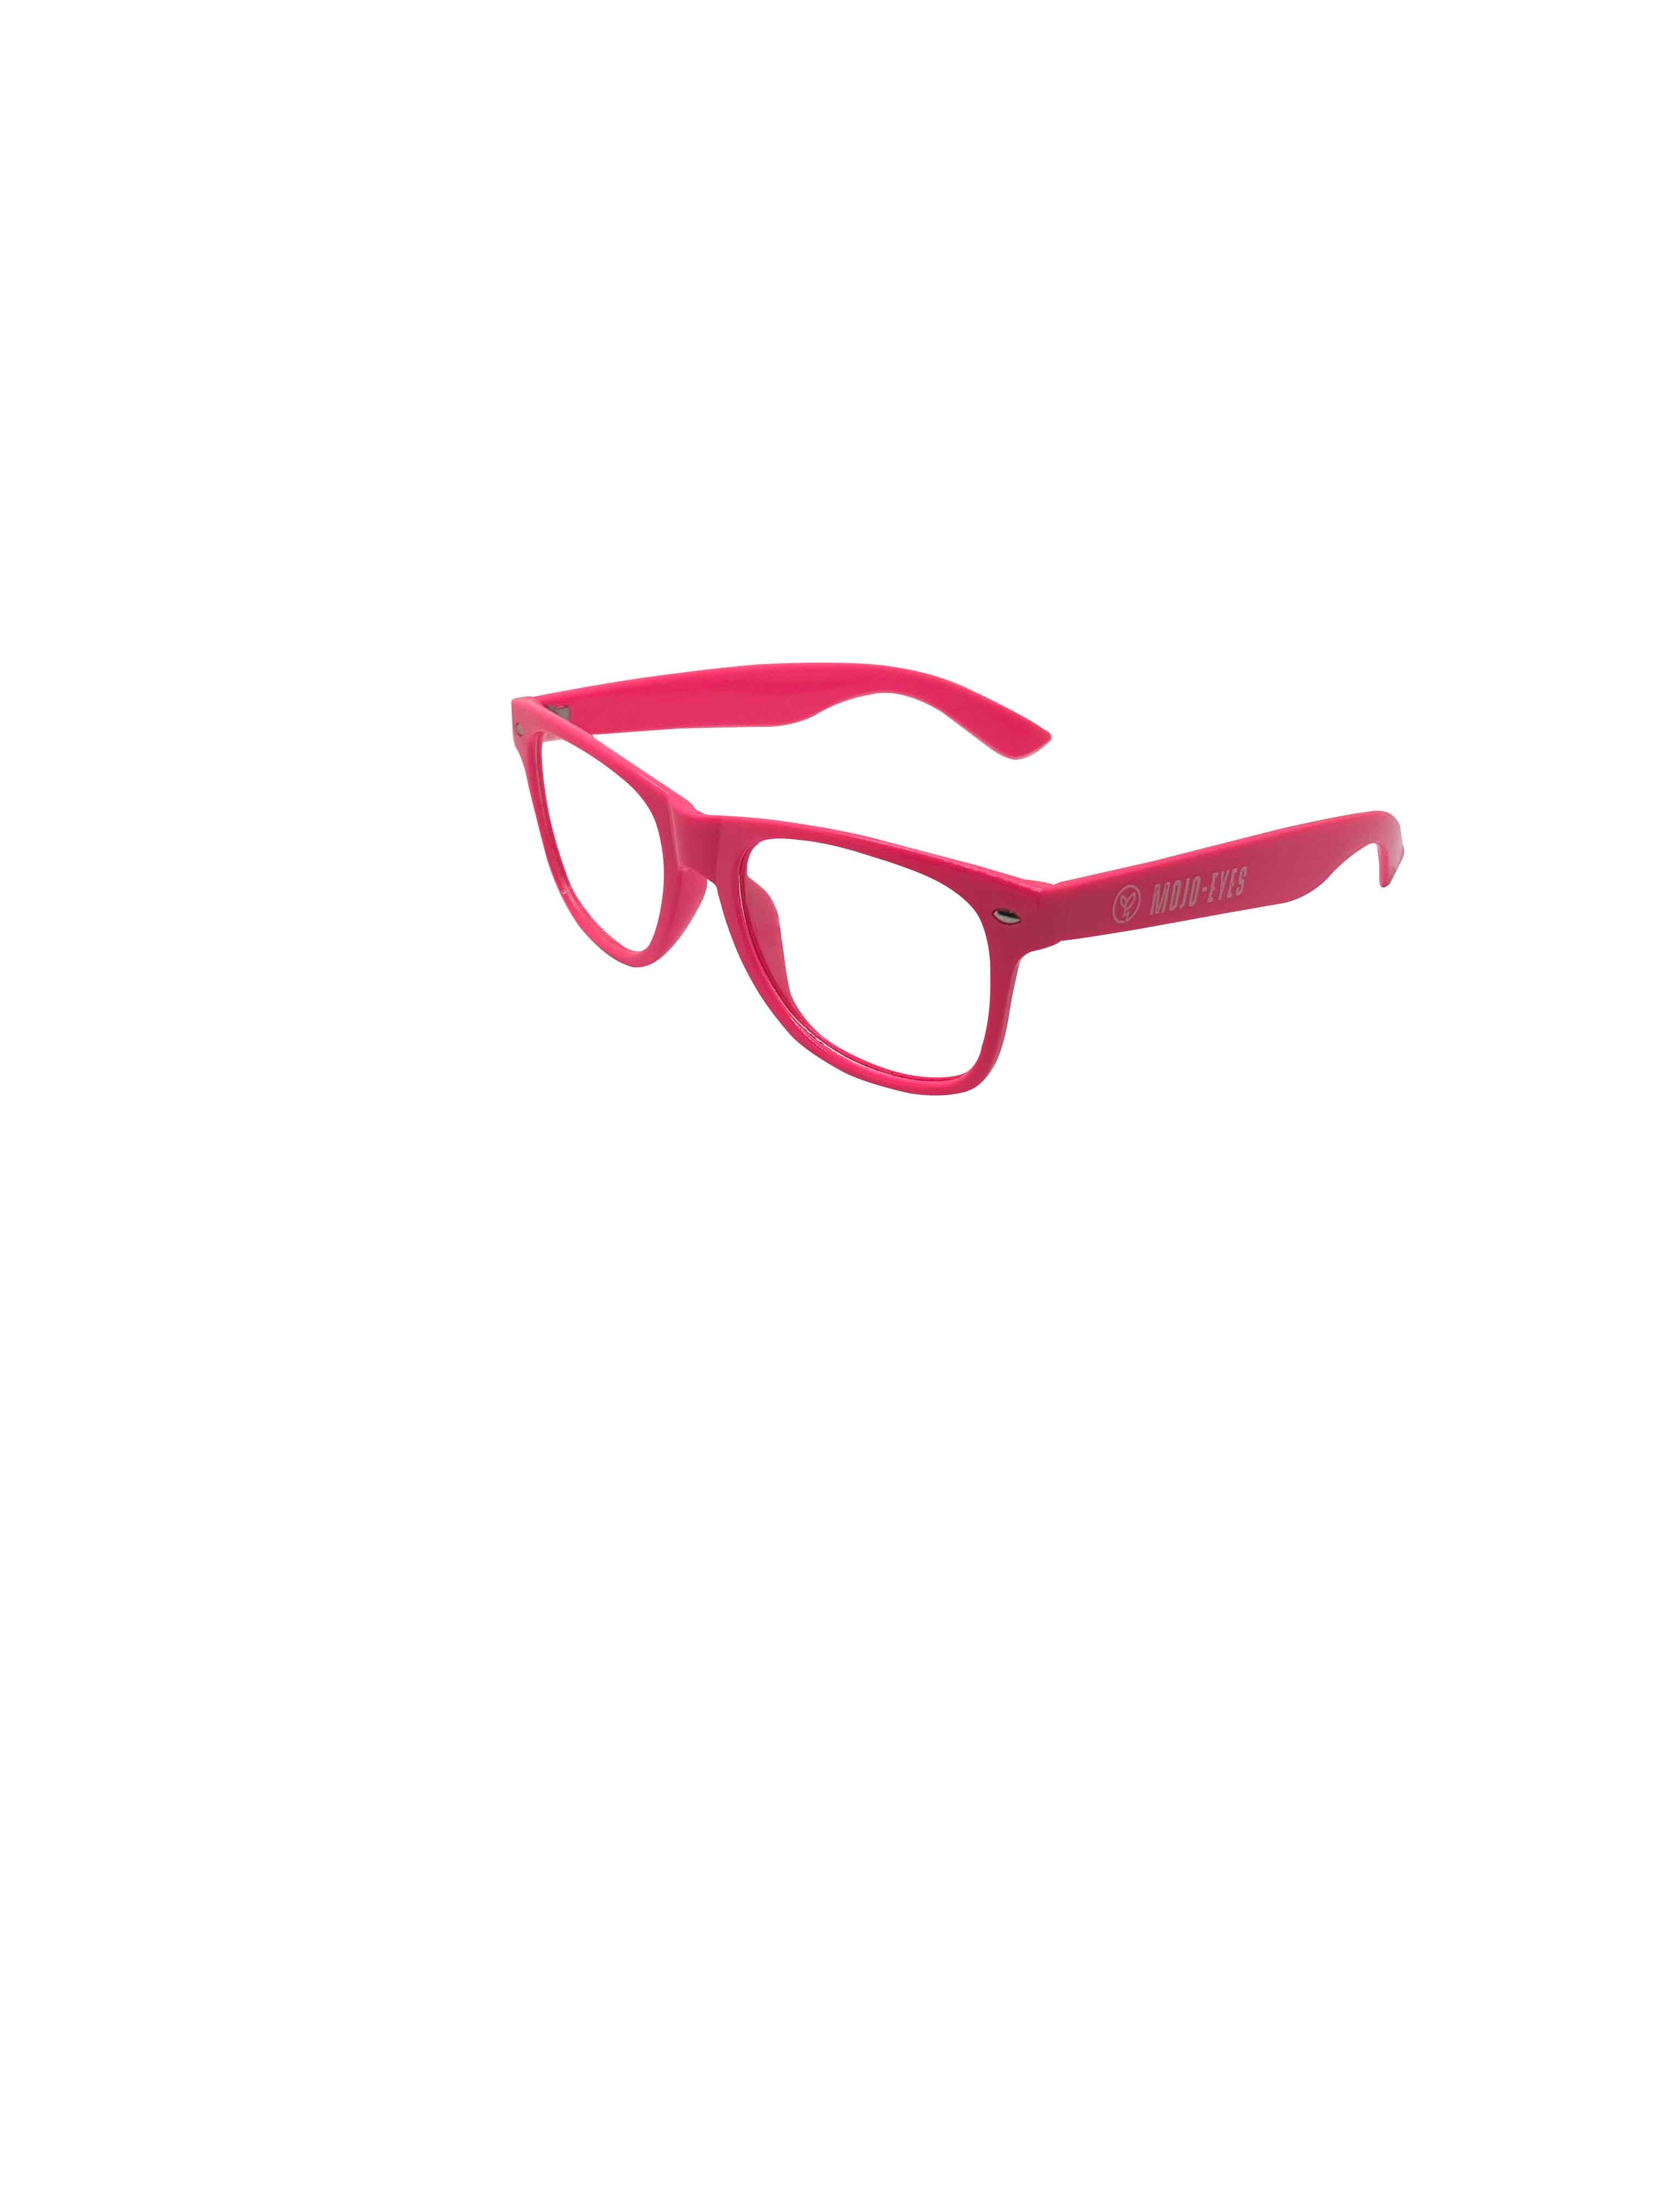 MOJO-EYES perception enhancing glasses - High Powered Organics